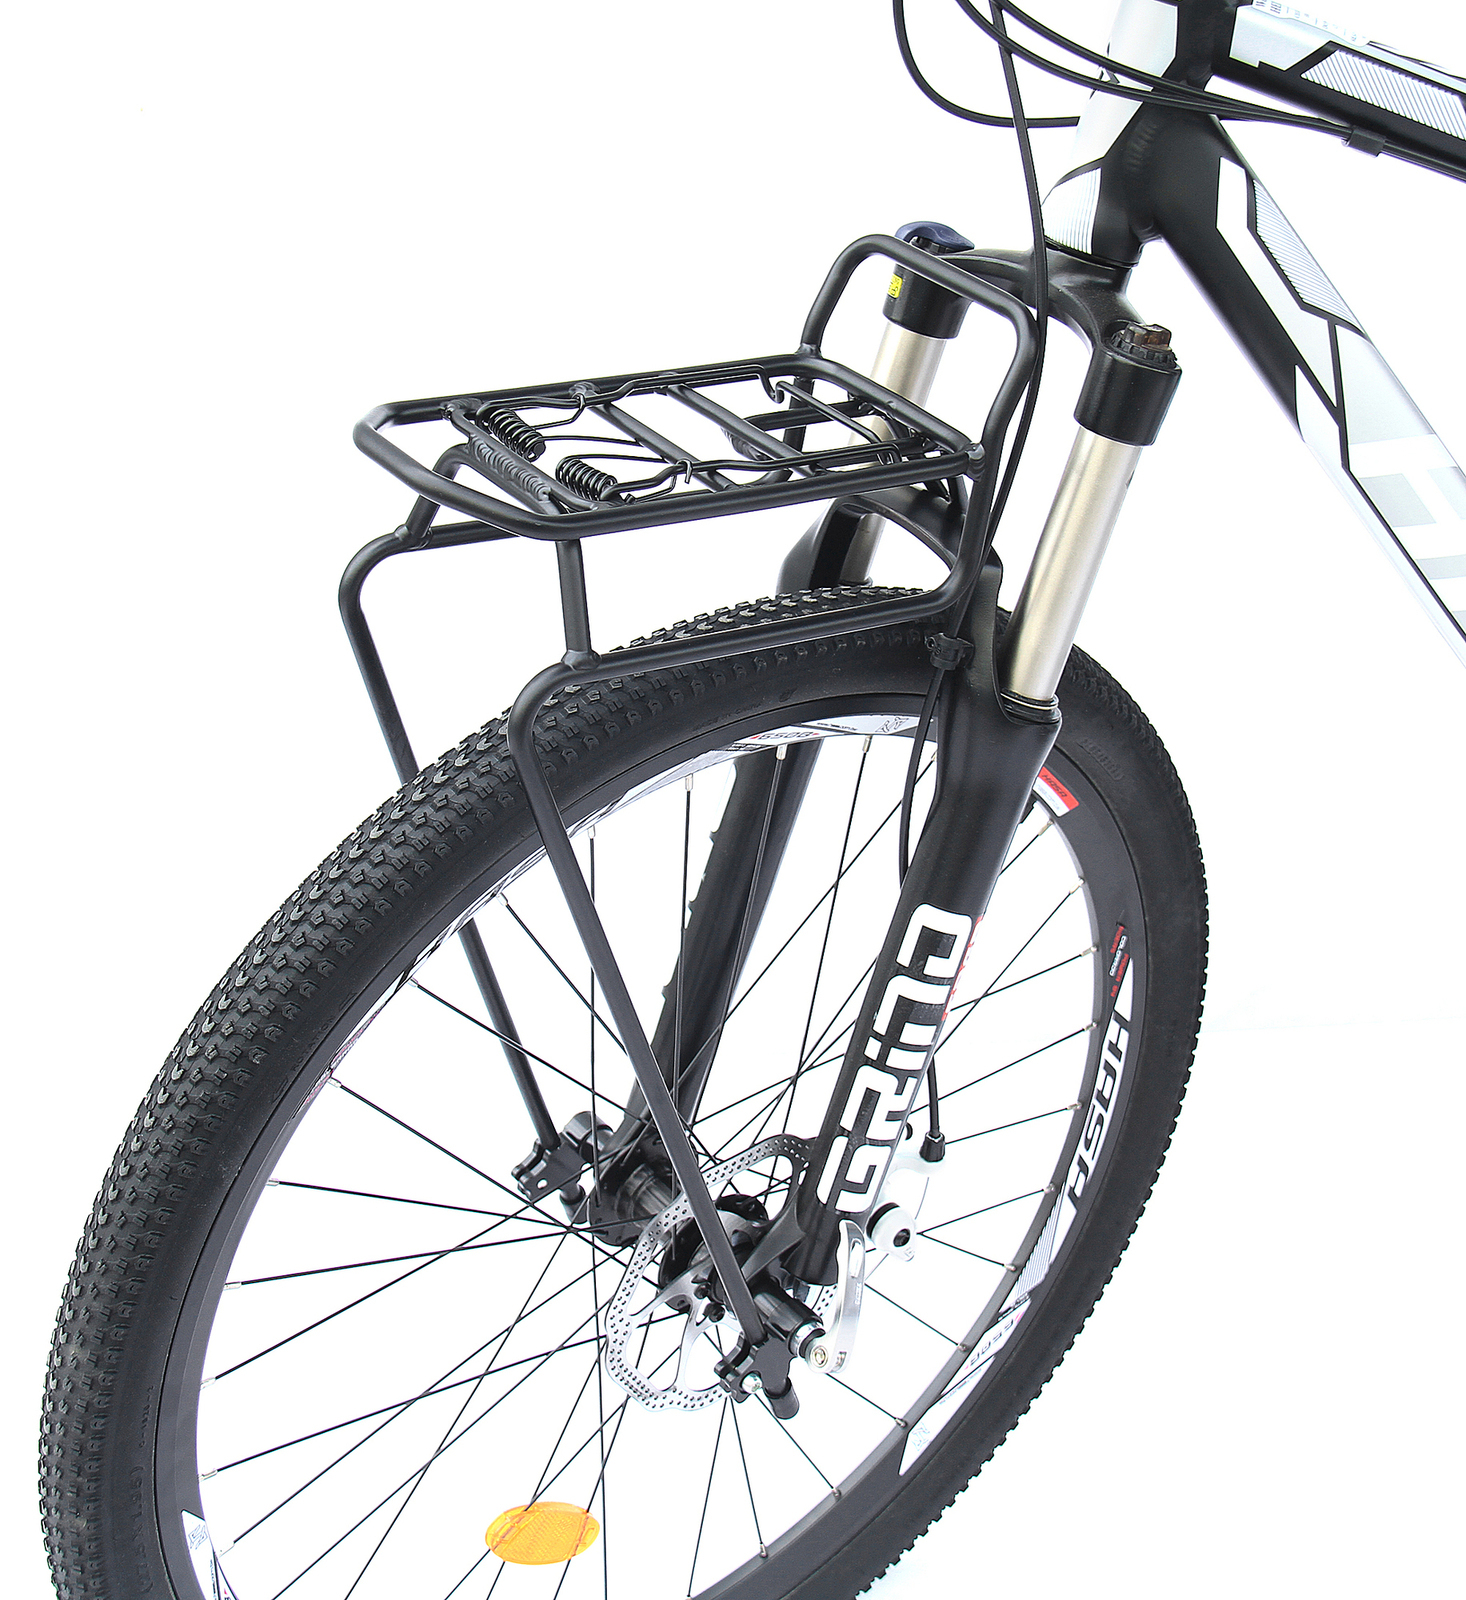 Передний багажник для велосипеда. Багажник передний Ostand CD-241. Велобагажник Ostand CD-241. Велобагажник Ostand CD-241, передний, 24-29",. Багажник велосипедный Ostand CD-241 передний.